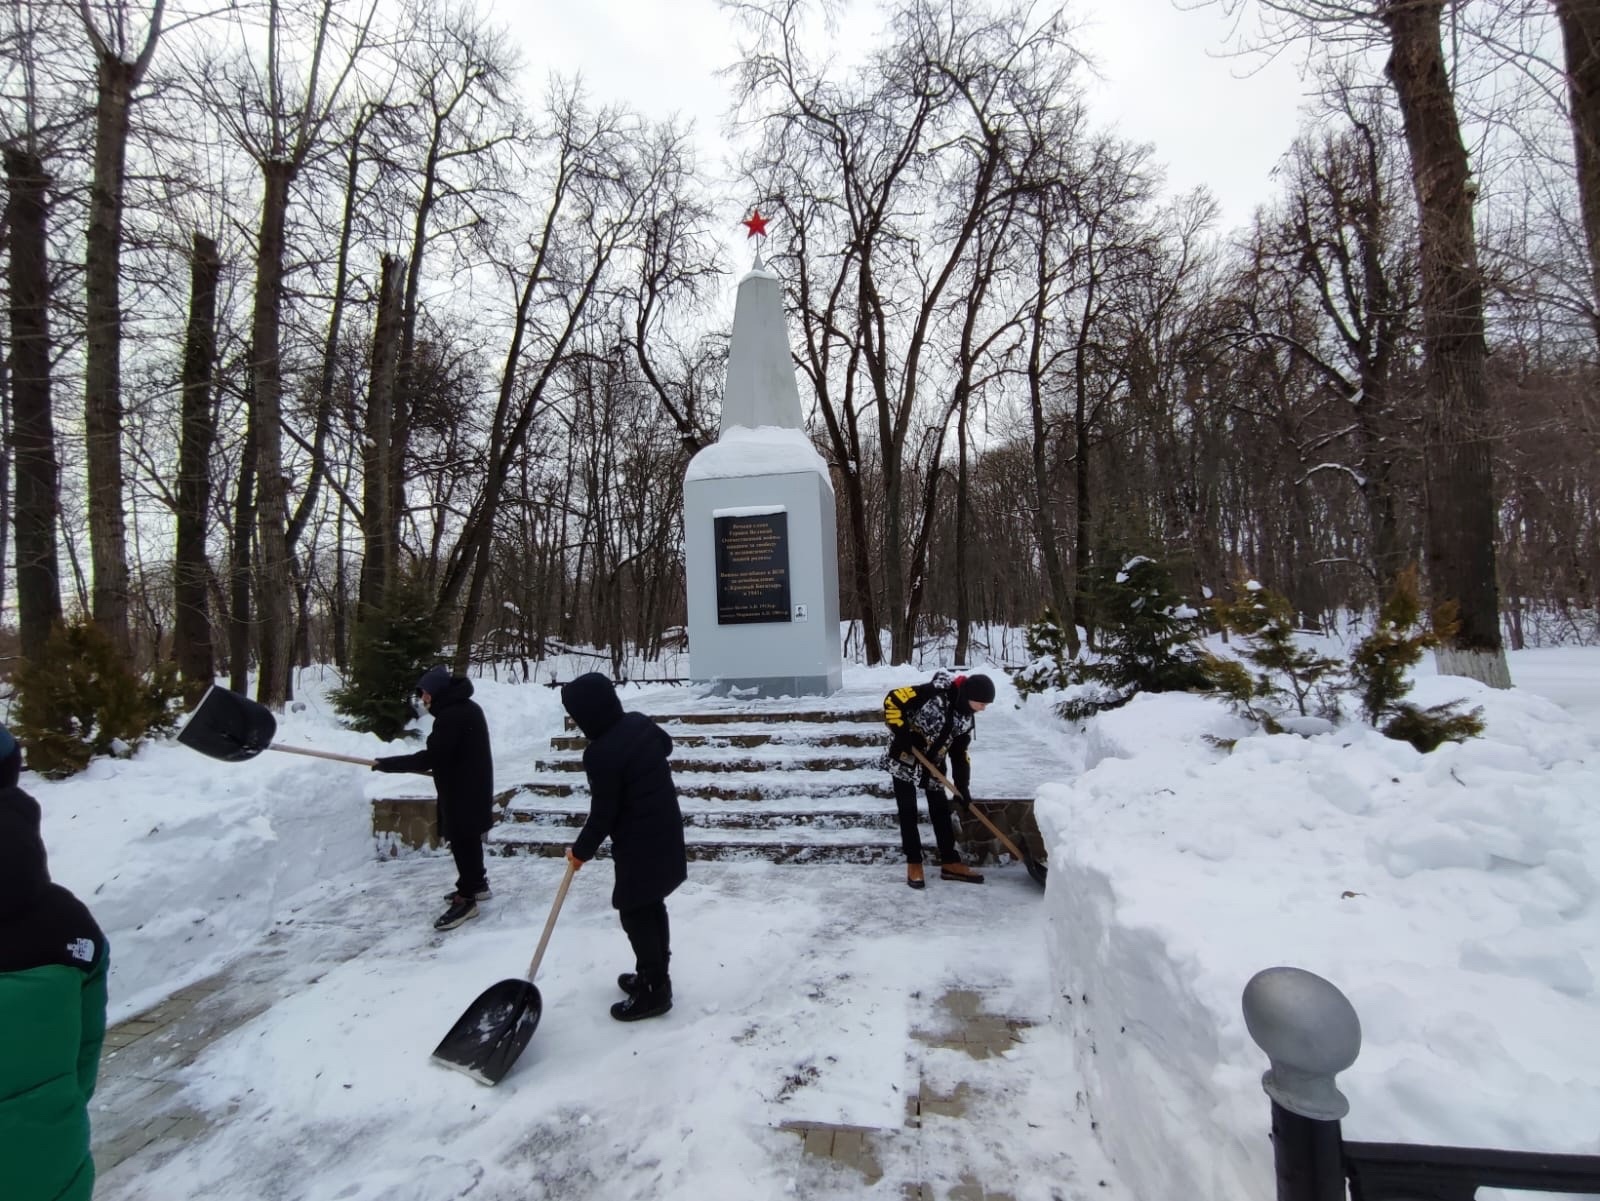 Активисты волонтёрского отряда &amp;quot;Доброделы&amp;quot; очистили от снега братскую могилу к празднику 23 февраля, подготовили место для митинга, который состоится 22 февраля.